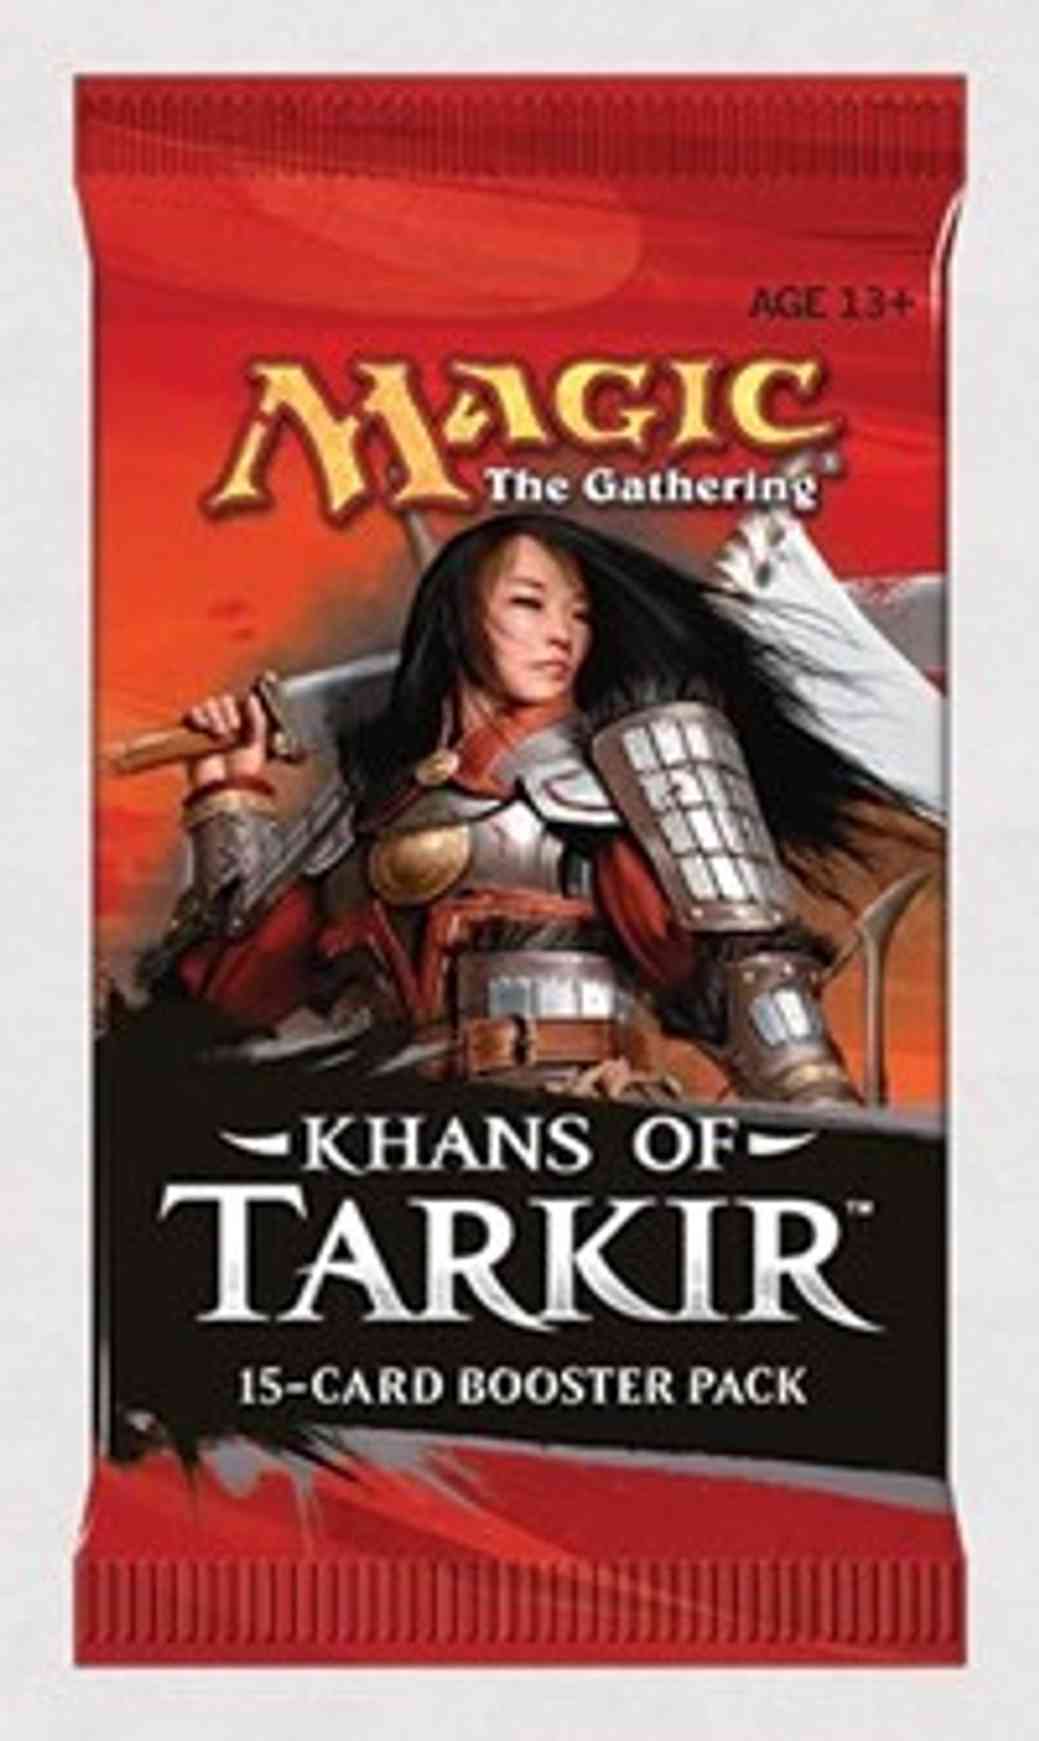 Khans of Tarkir - Booster Pack magic card front